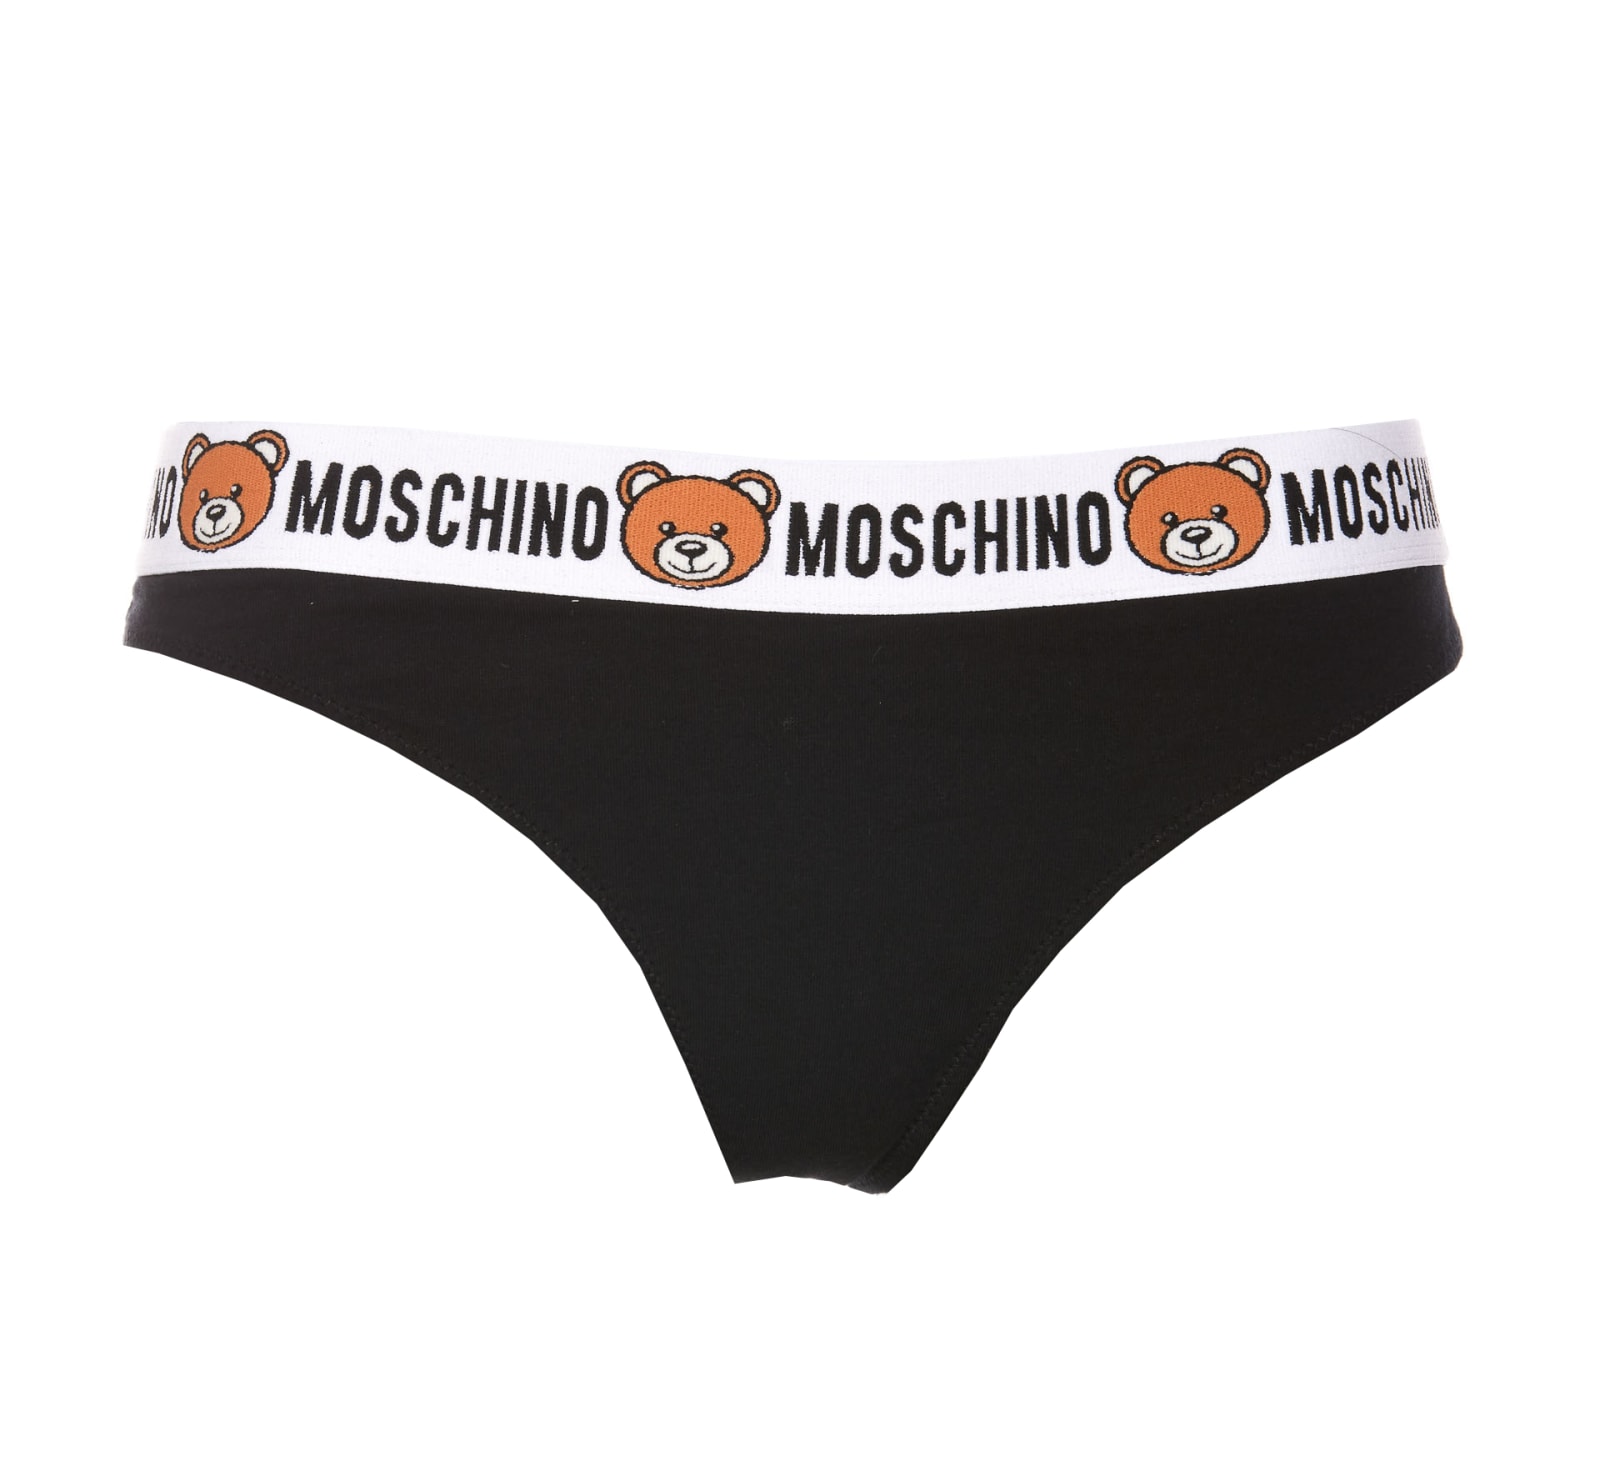 Moschino Bi Pack Thong